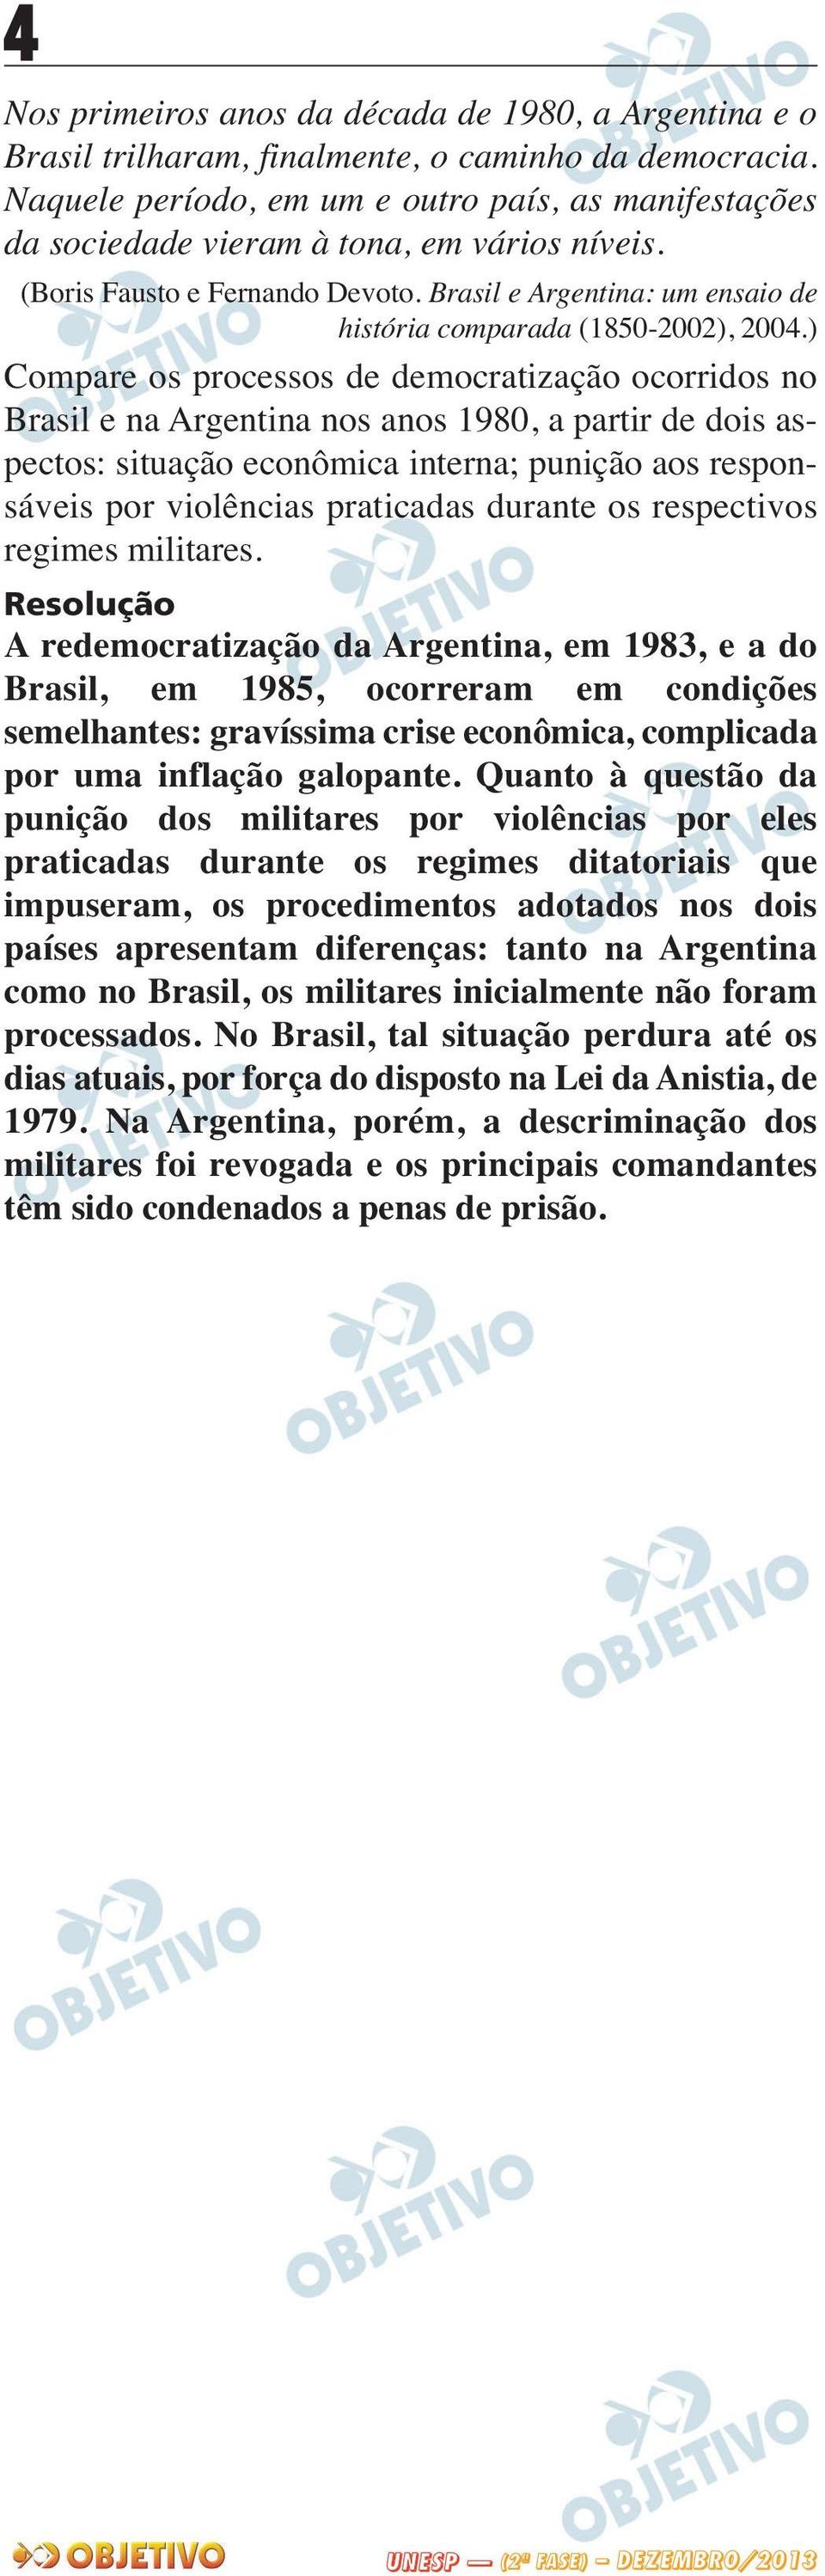 Brasil e Argentina: um ensaio de história comparada (1850-2002), 2004.